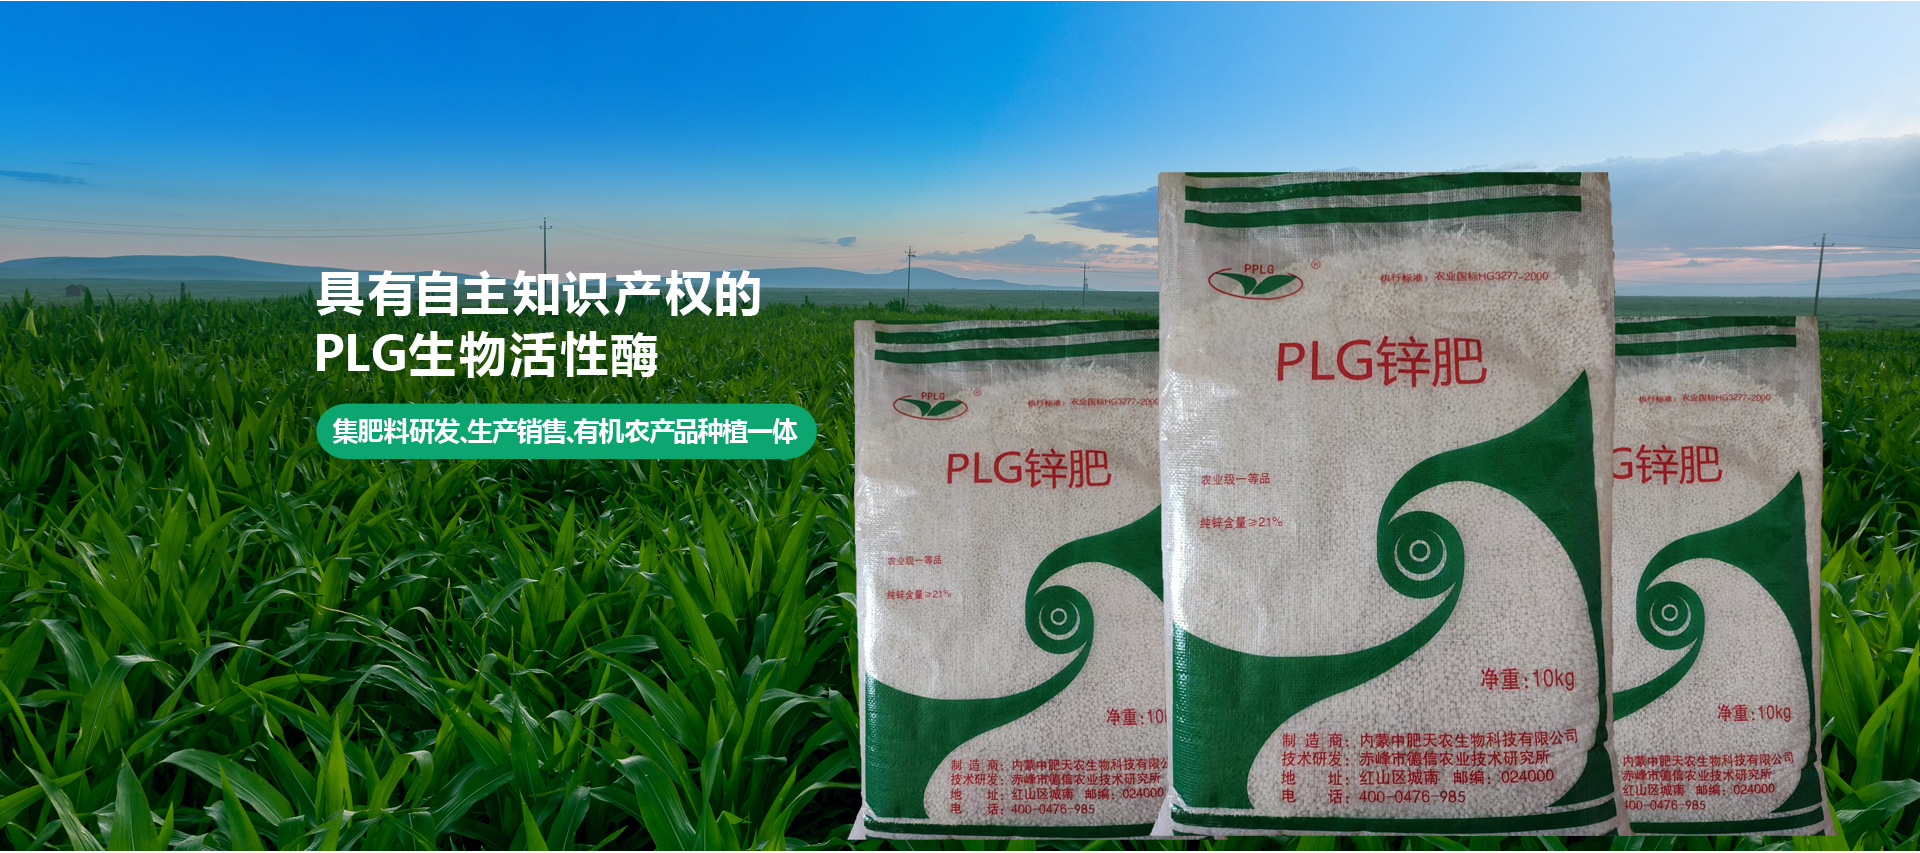 内蒙古中肥天农生物科技有限公司